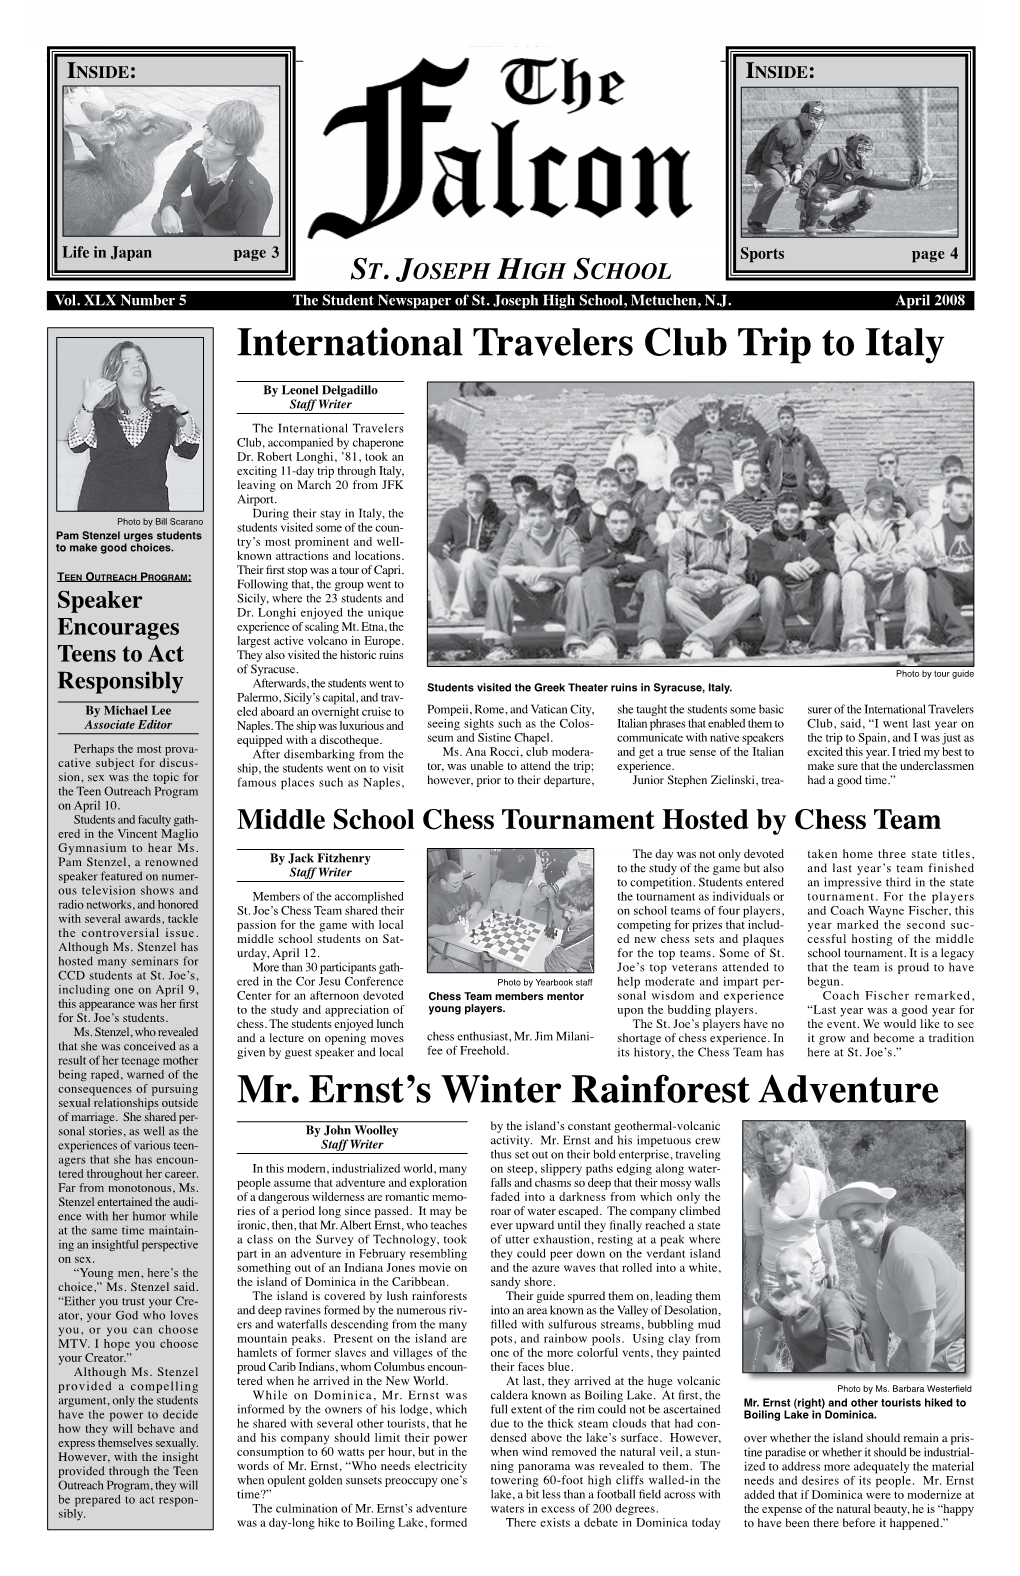 International Travelers Club Trip to Italy Mr. Ernst's Winter Rainforest Adventure